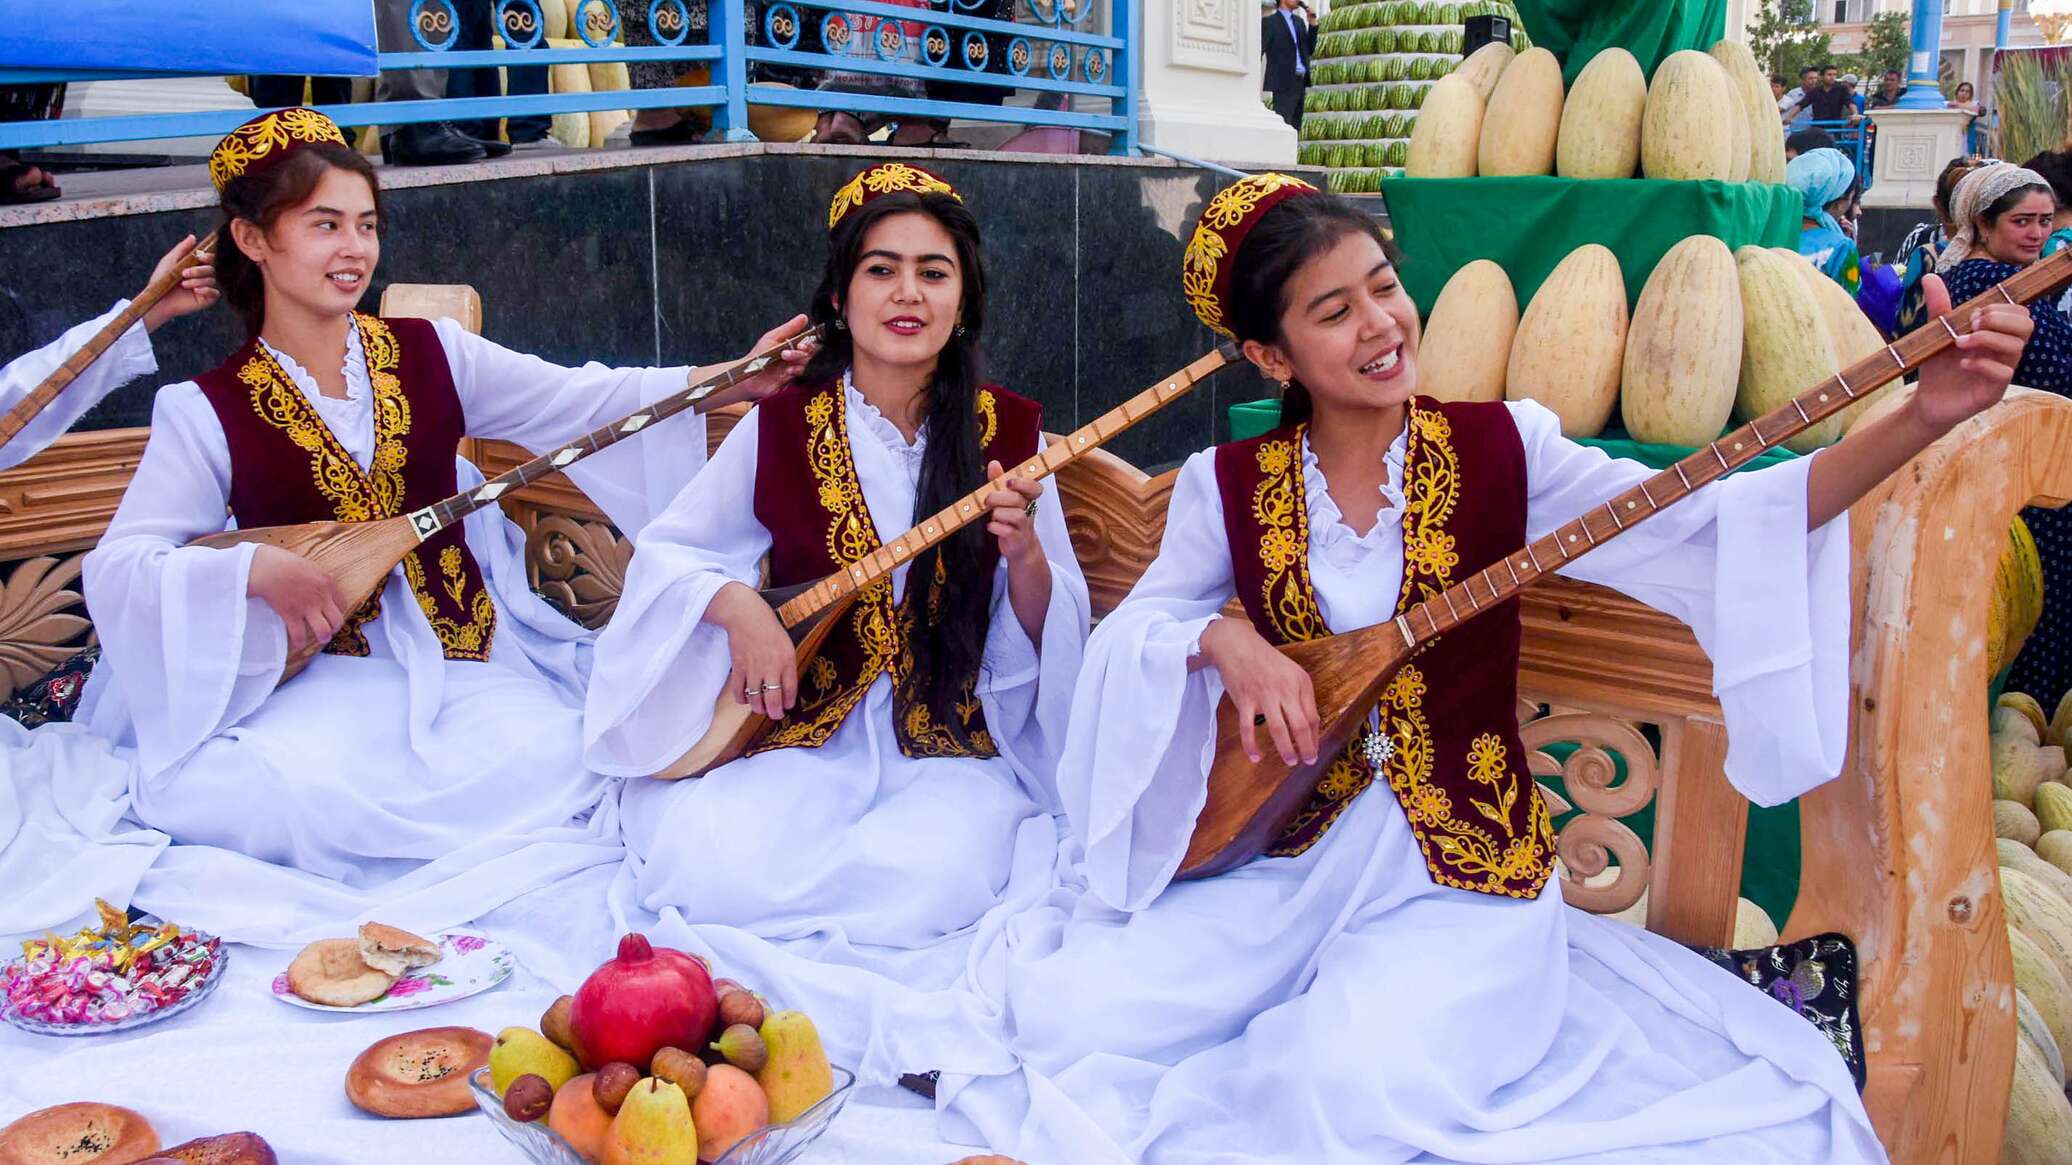 Узбекская праздничная духовая труба. Мехргон праздник в Таджикистане. Узбекистан гостеприимство. Узбекские праздники. Гостеприимность узбекского народа.